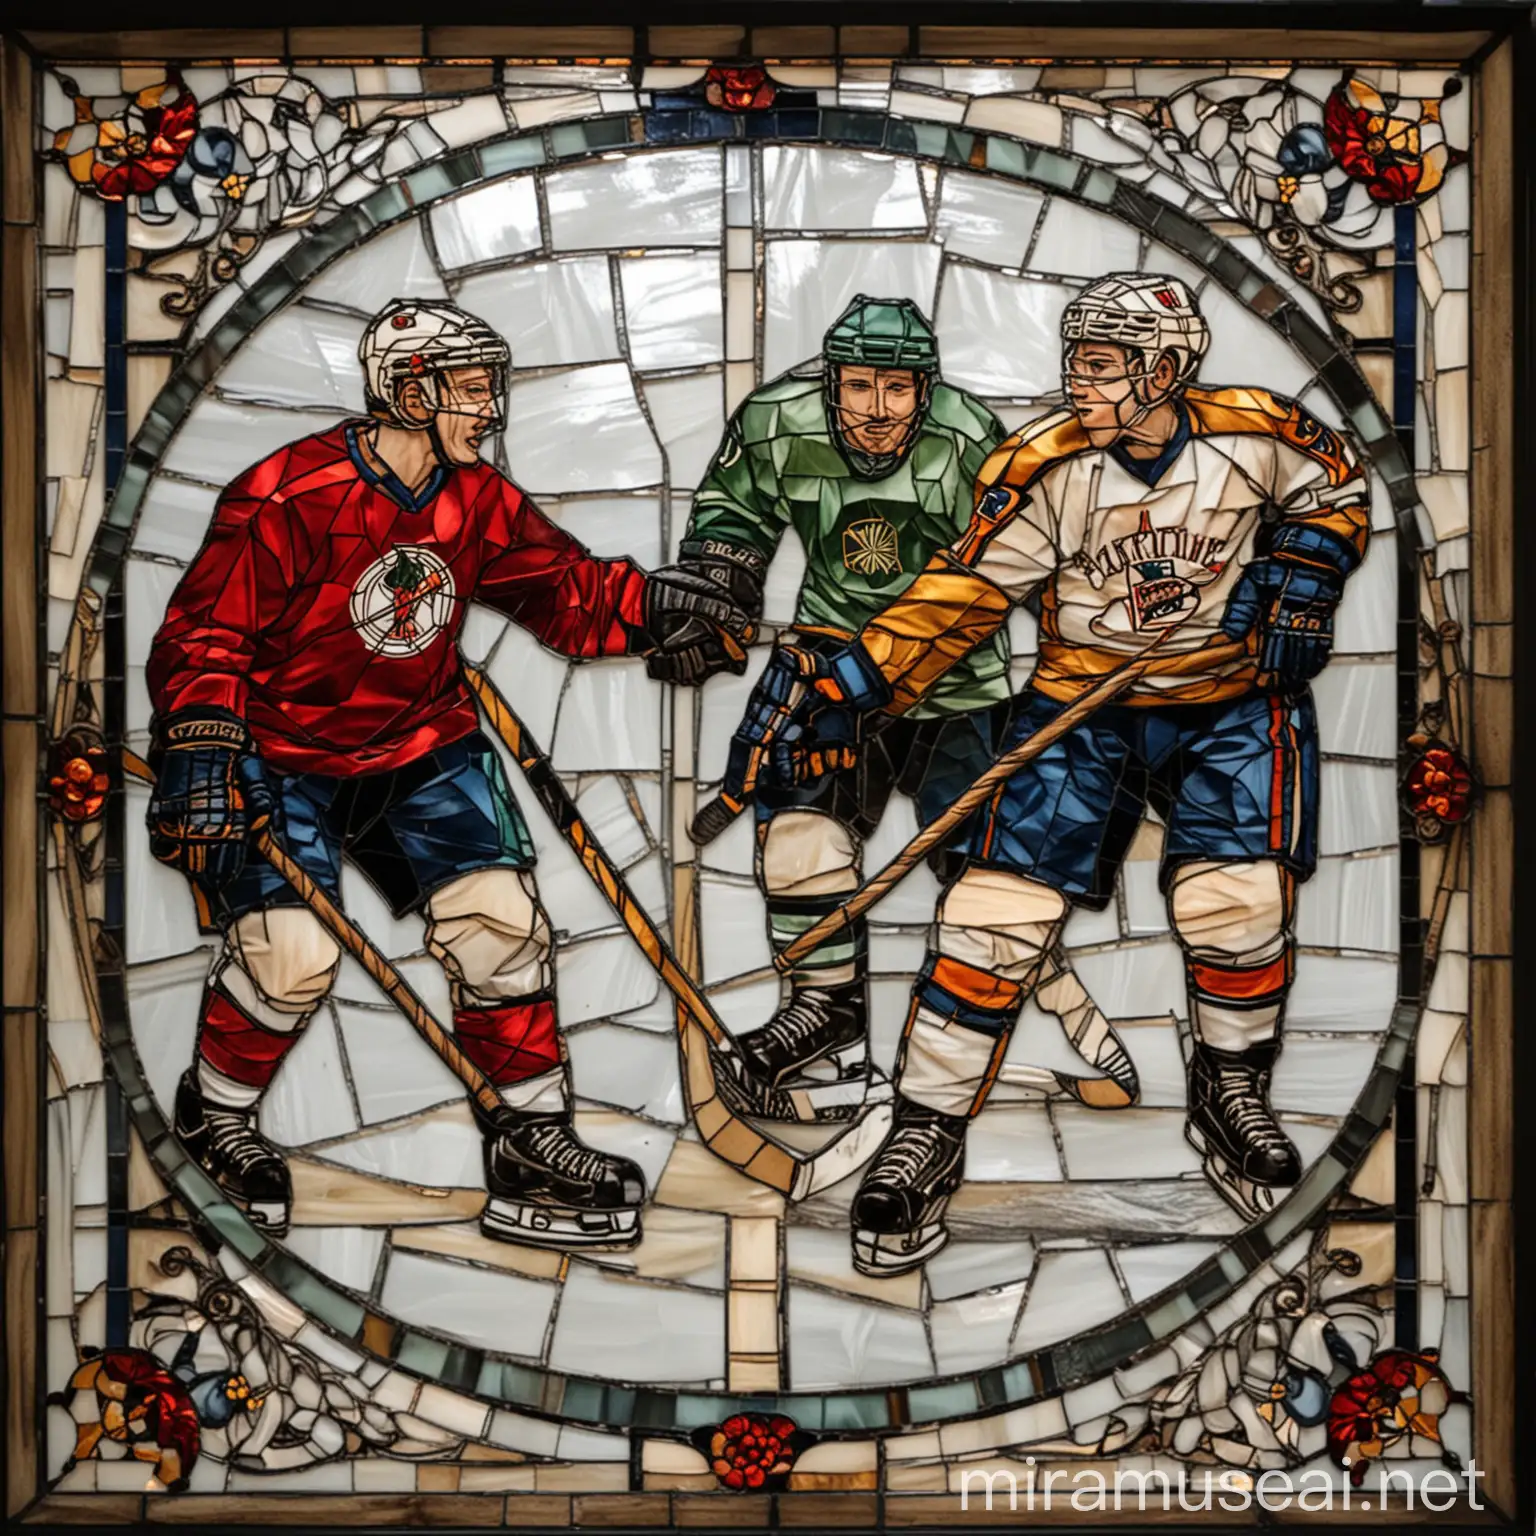 Витражная мозайка, на ней изображены хоккеисты играющие в хоккей
